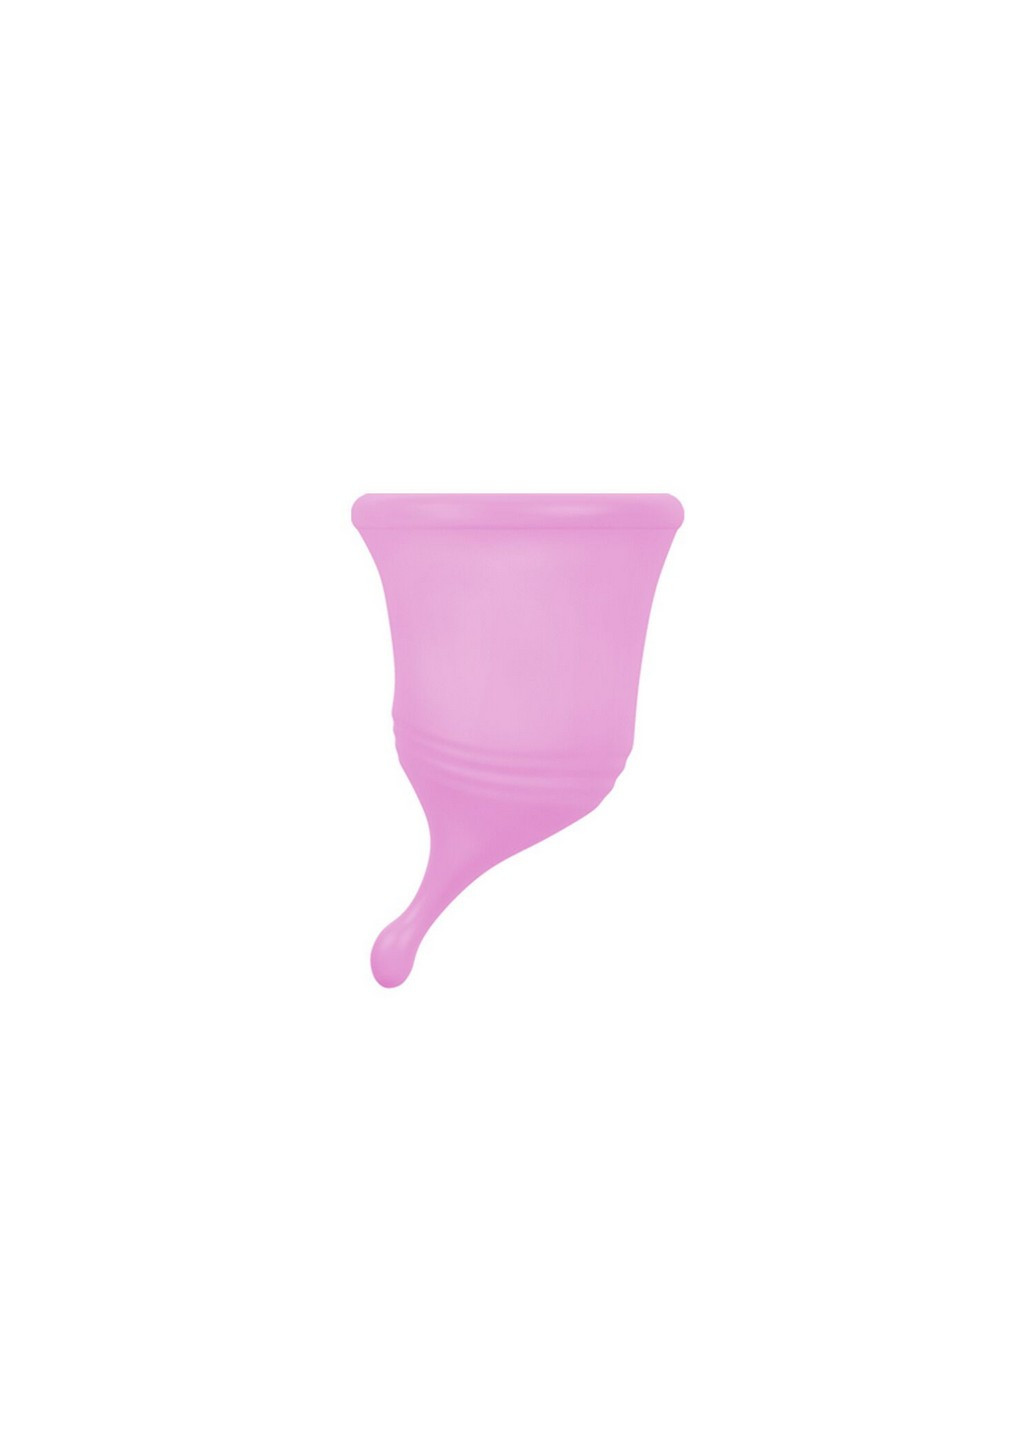 Менструальна чаша Eve Cup New розмір Femintimate (258353360)